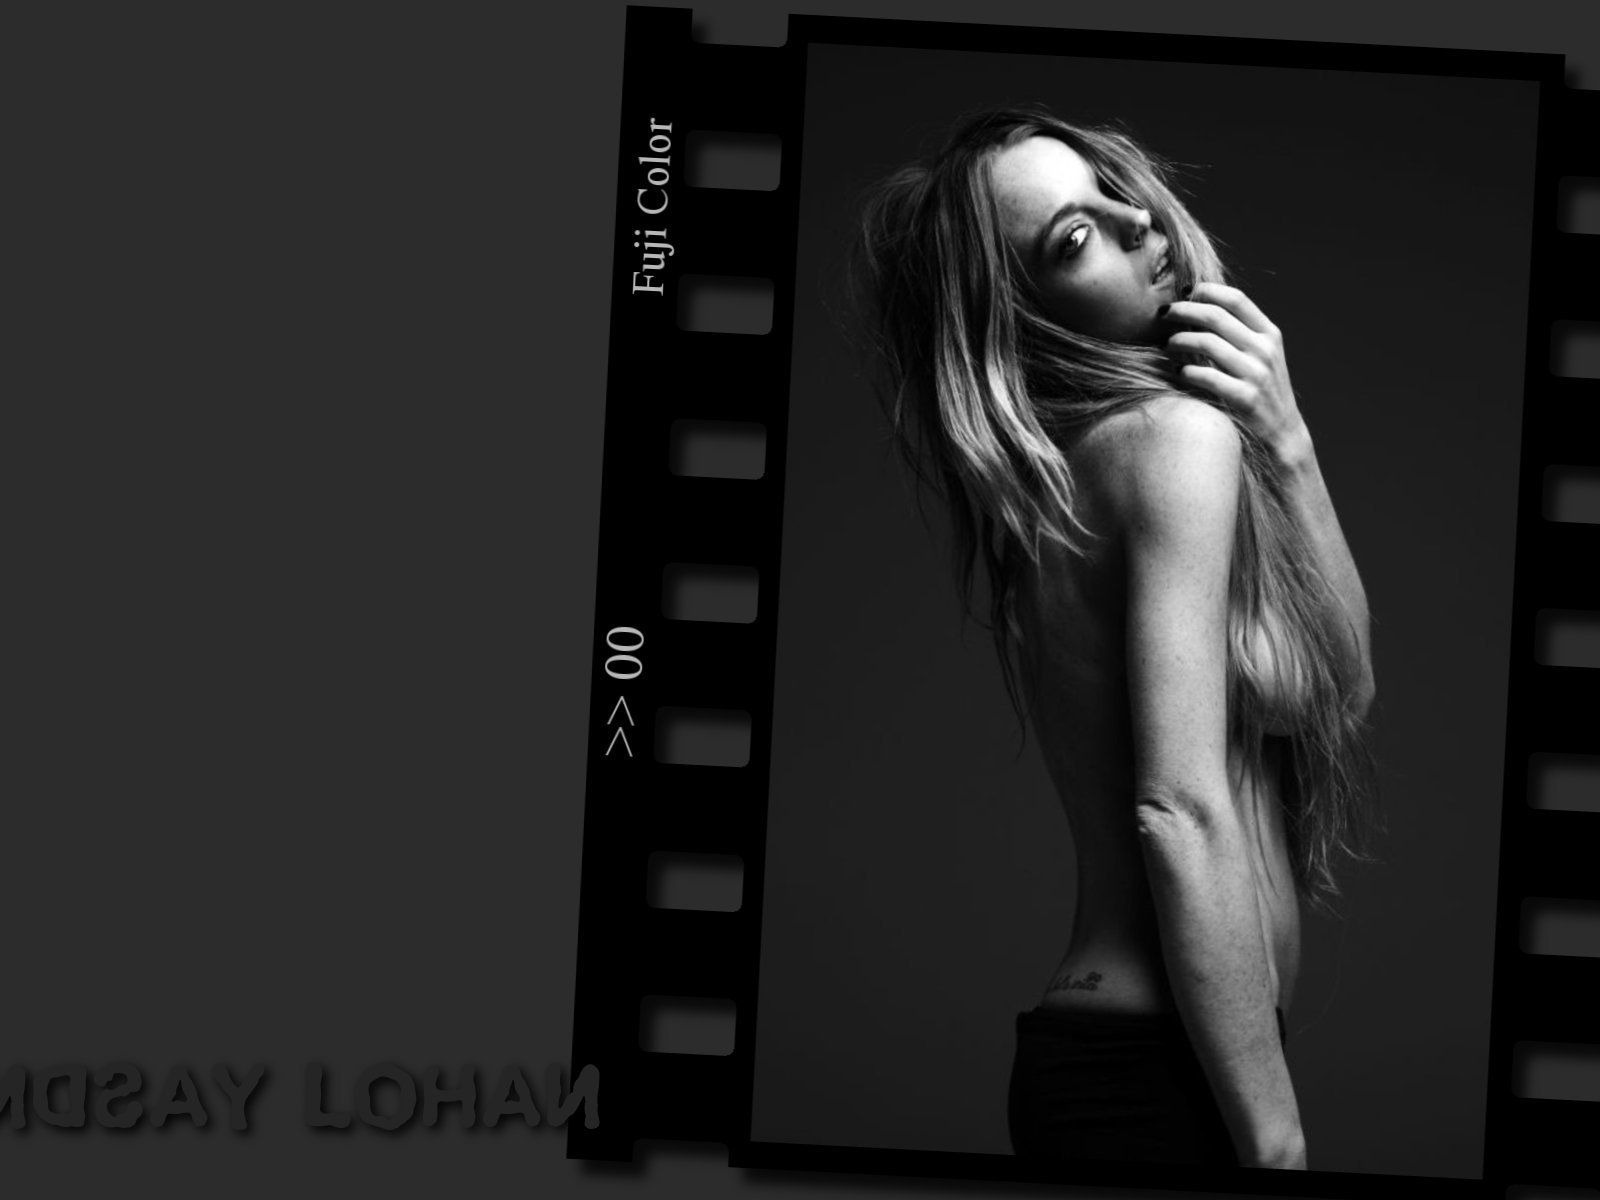 Lindsay Lohan 林賽·羅韓 美女壁紙 #25 - 1600x1200